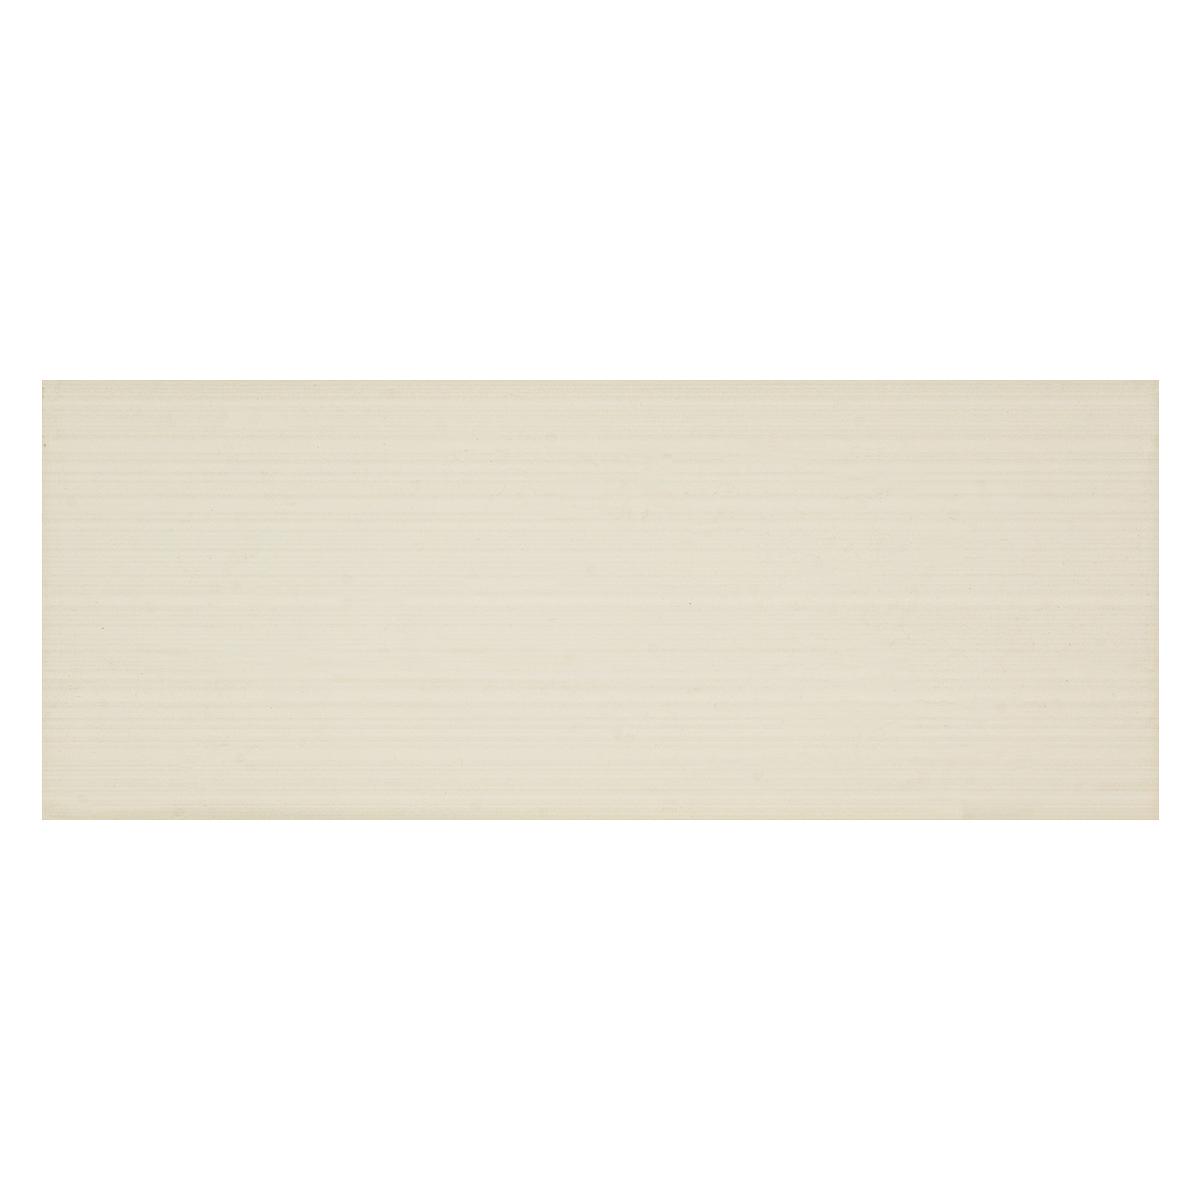 Mayólica Elegant Marfil Brillante - 30X60 cm - 1.44 m2